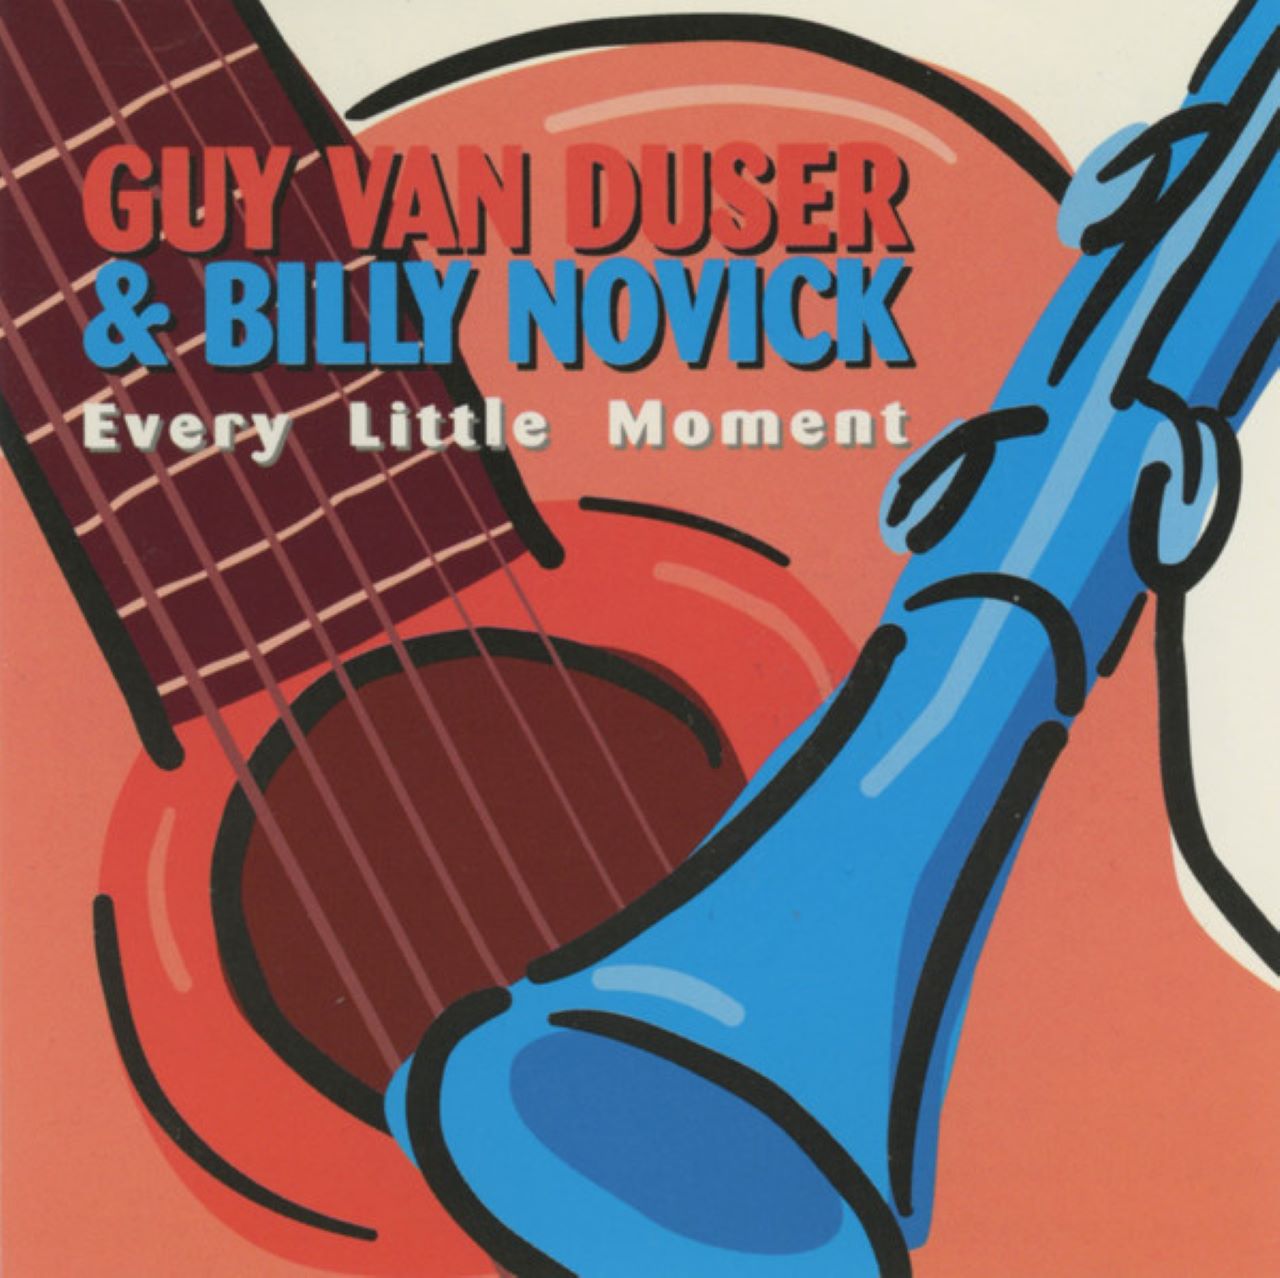 Guy Van Duser & Billy Novick - Every Little Moment cover album